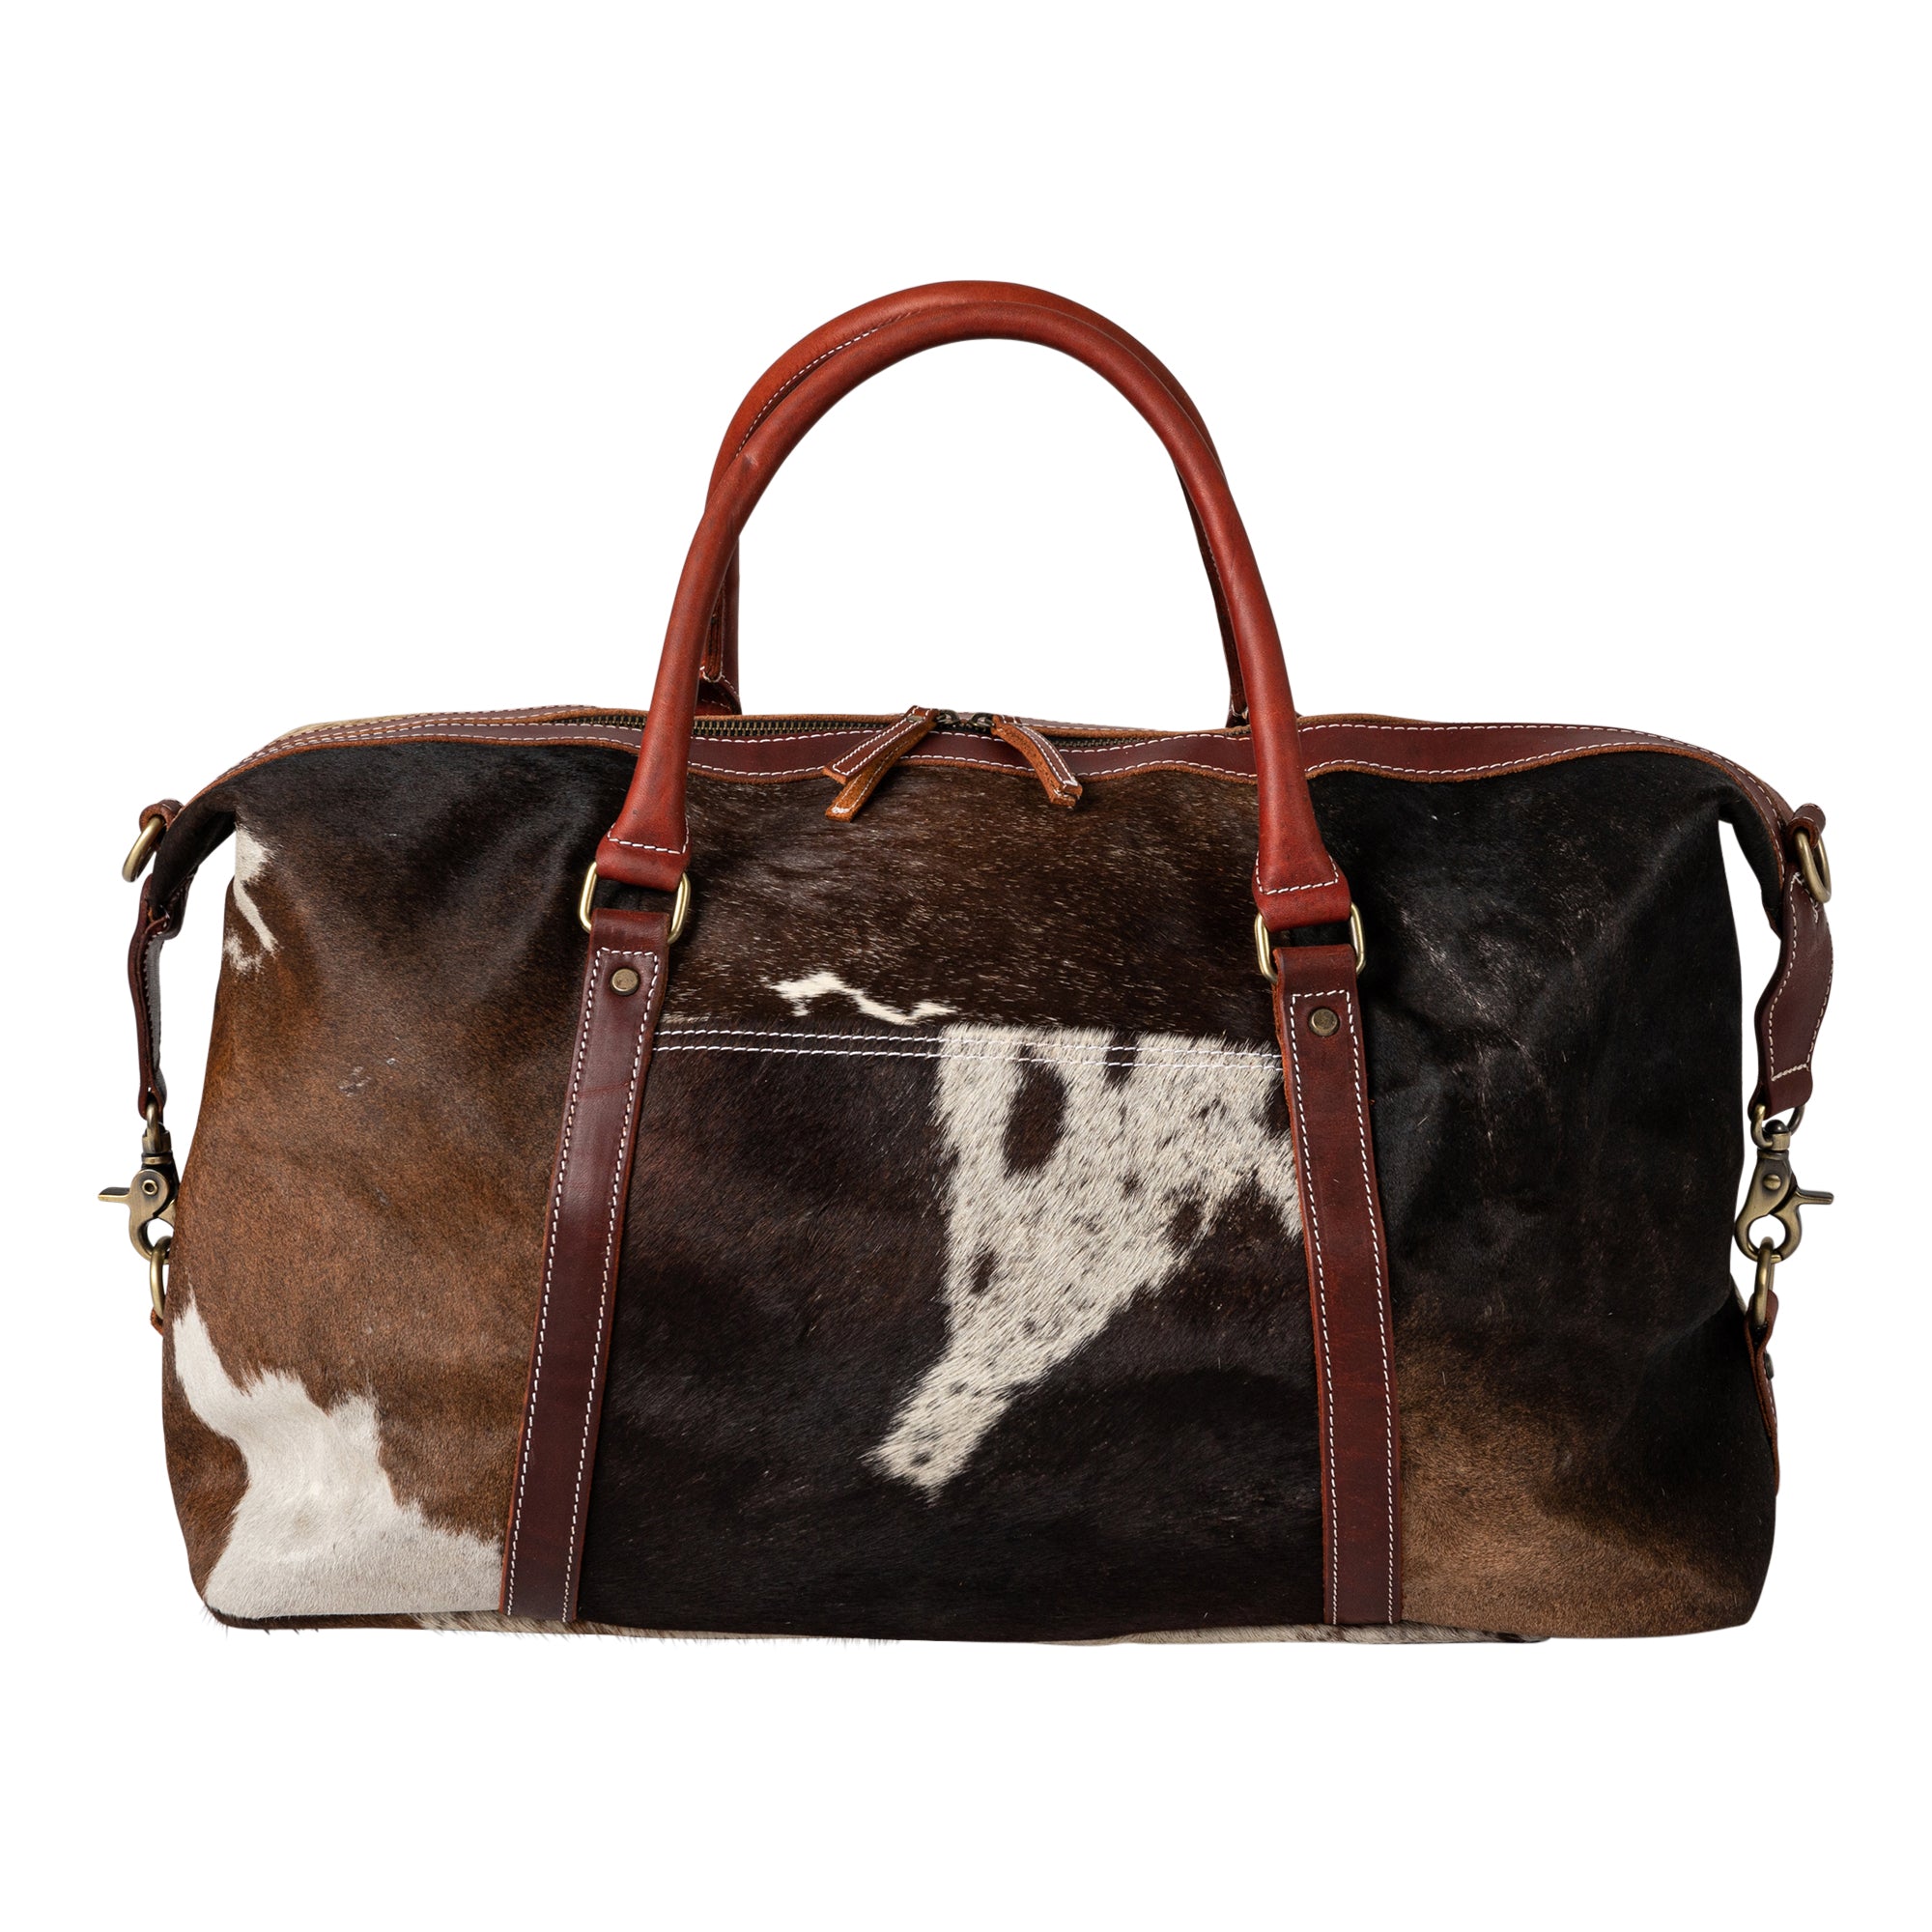 Large Cow Design Duffle Bag Purse